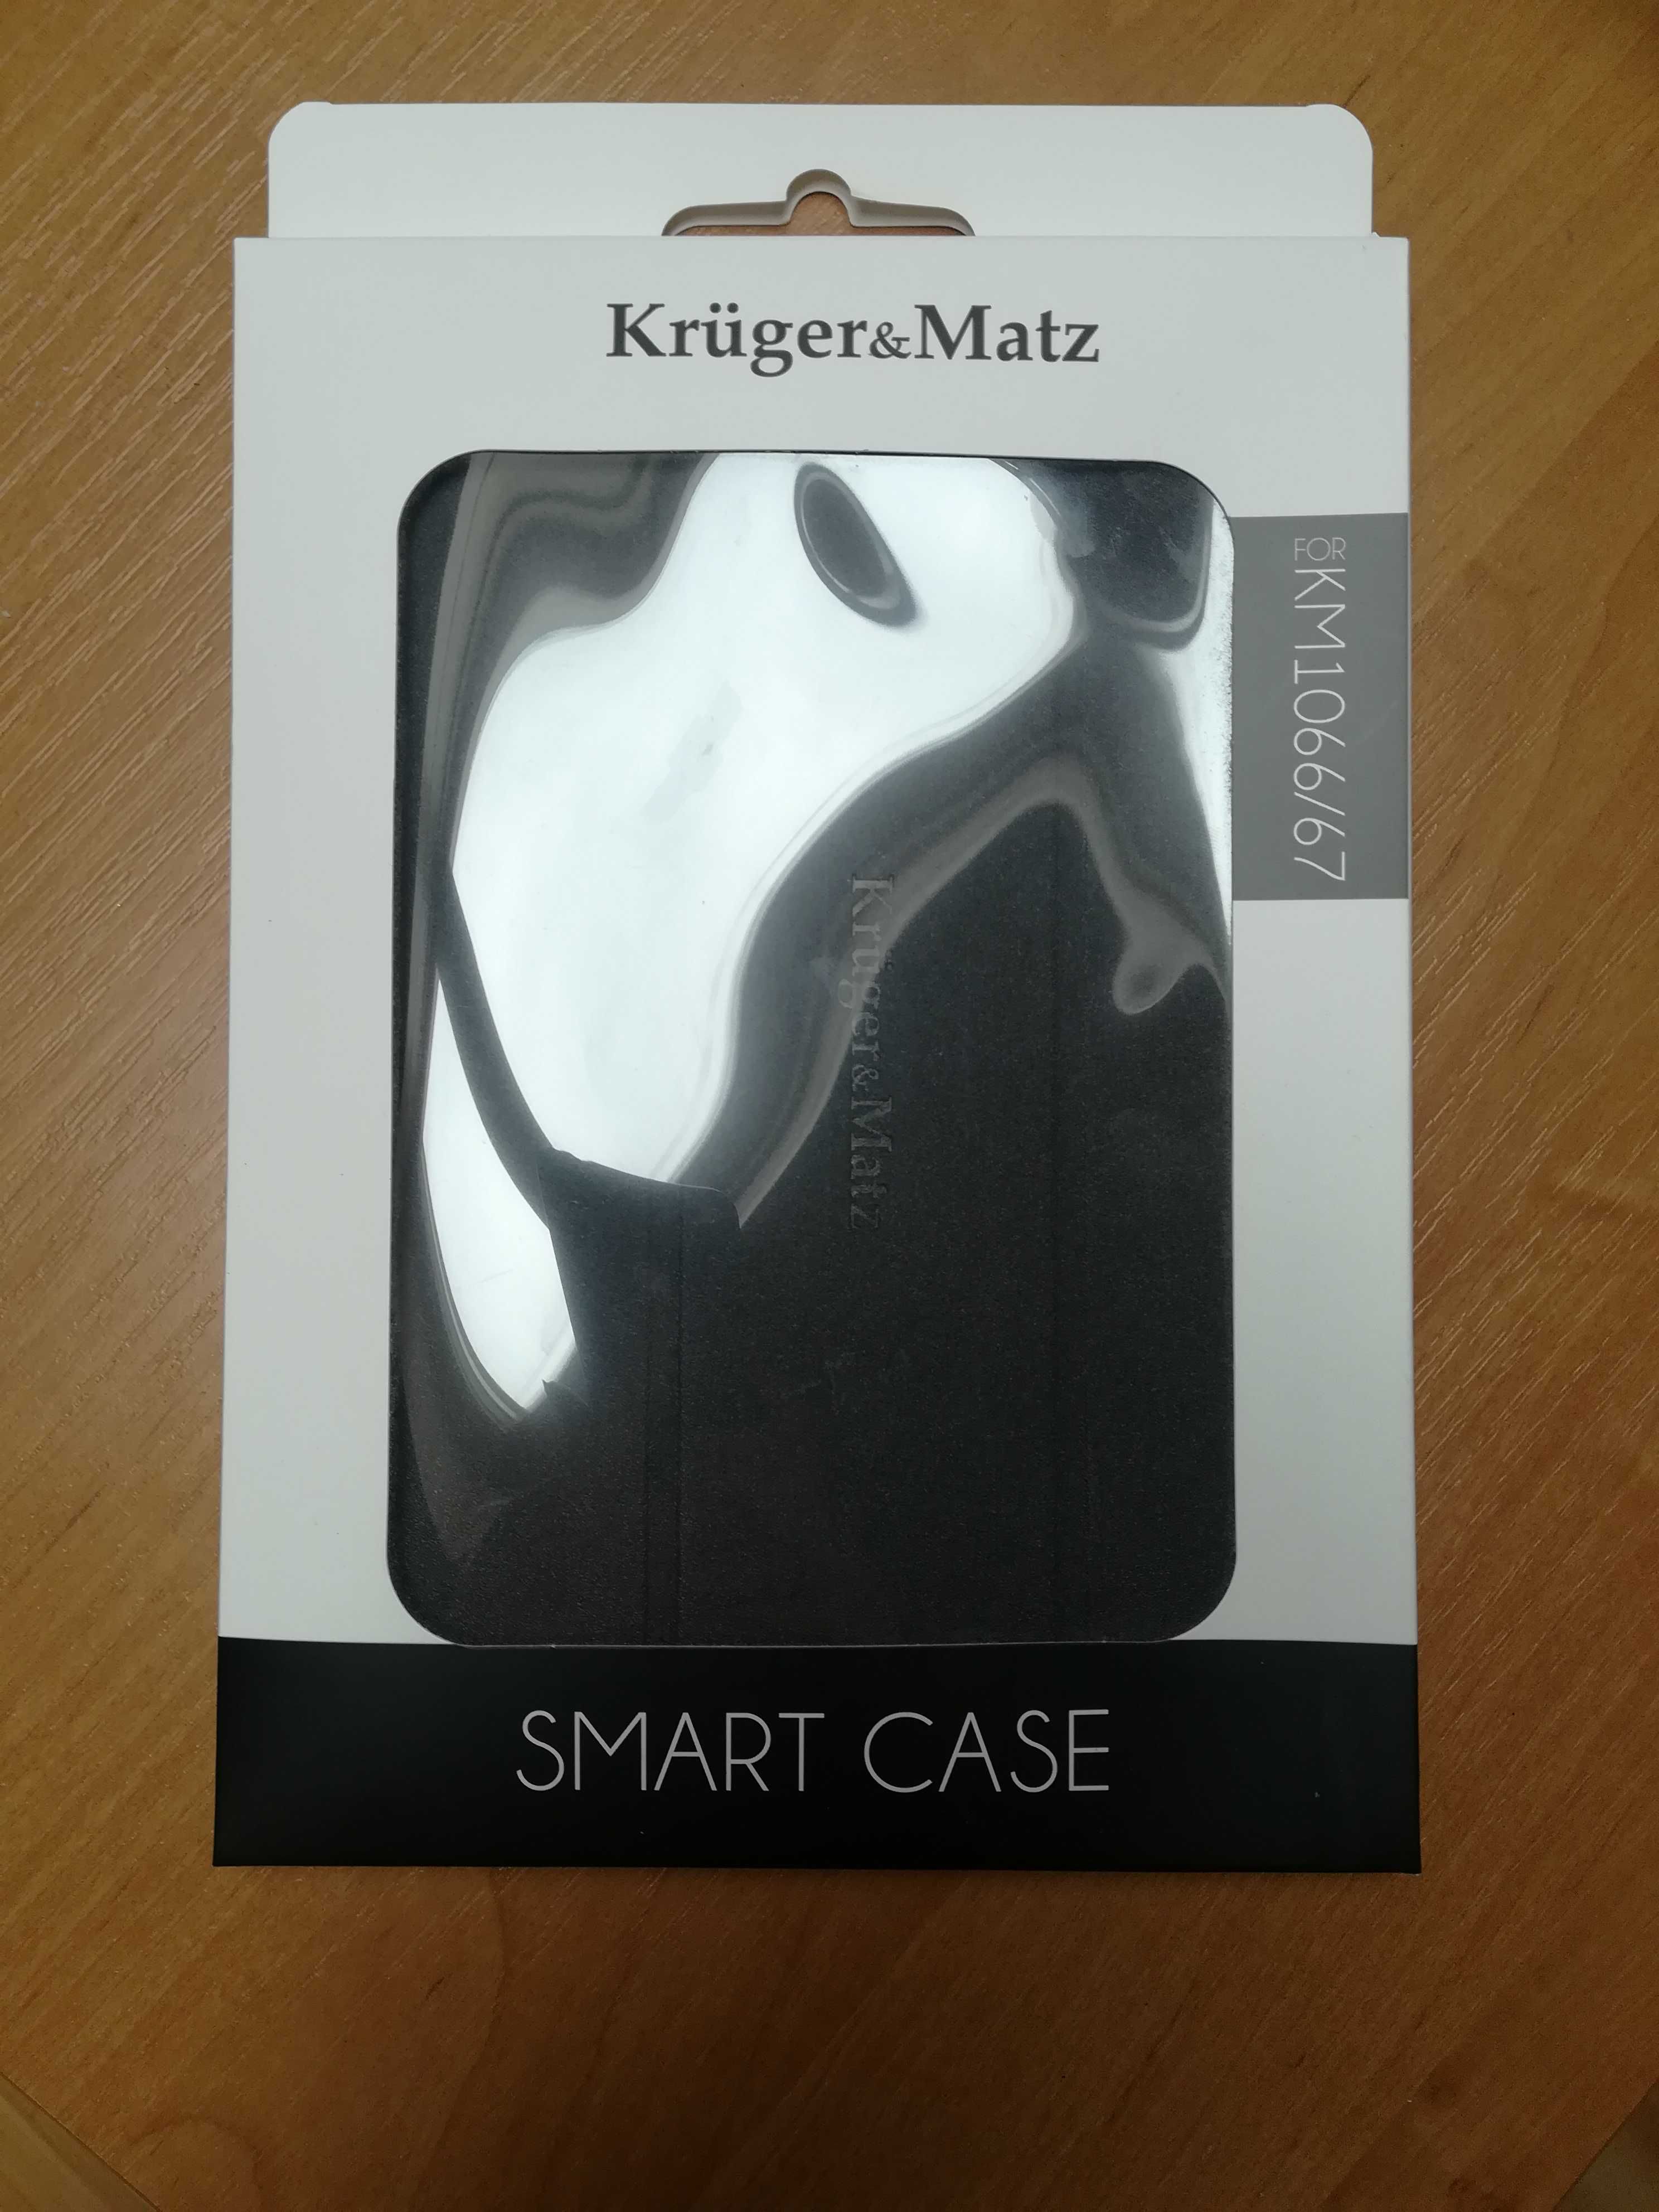 Smart case Kruger&Matz 1066/67